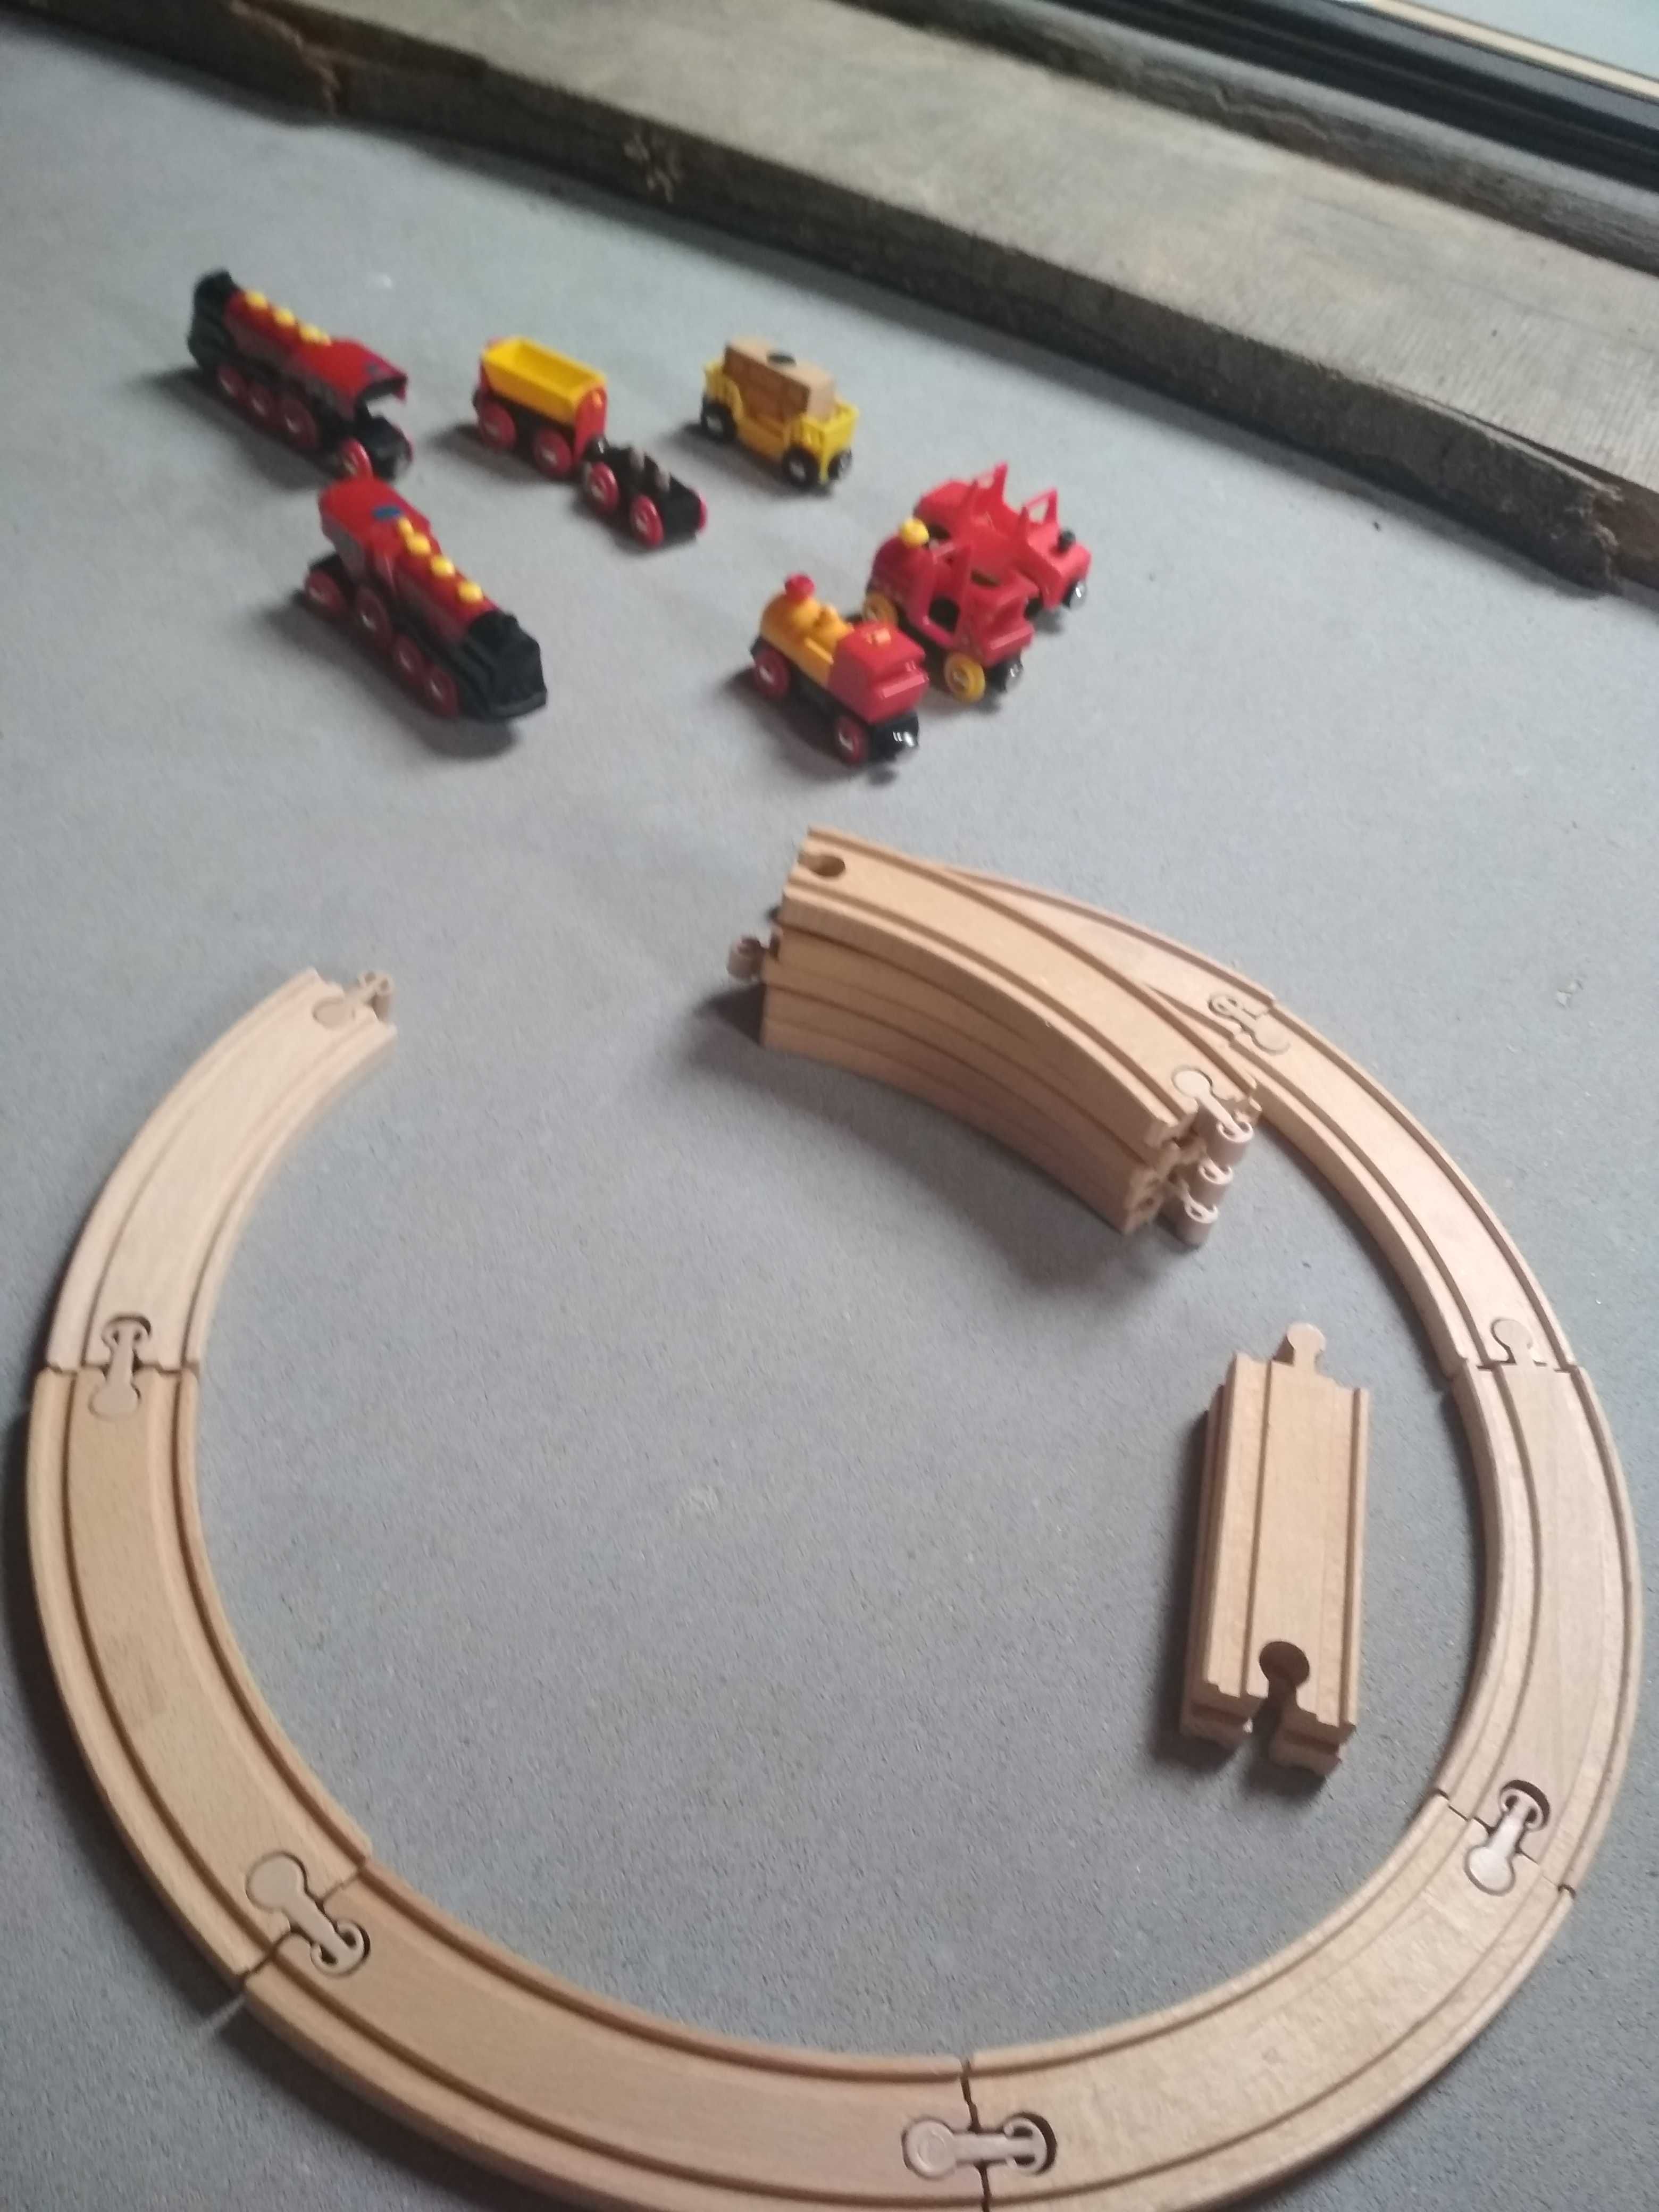 kolejka plus wagony i lokomotywy duży wybór